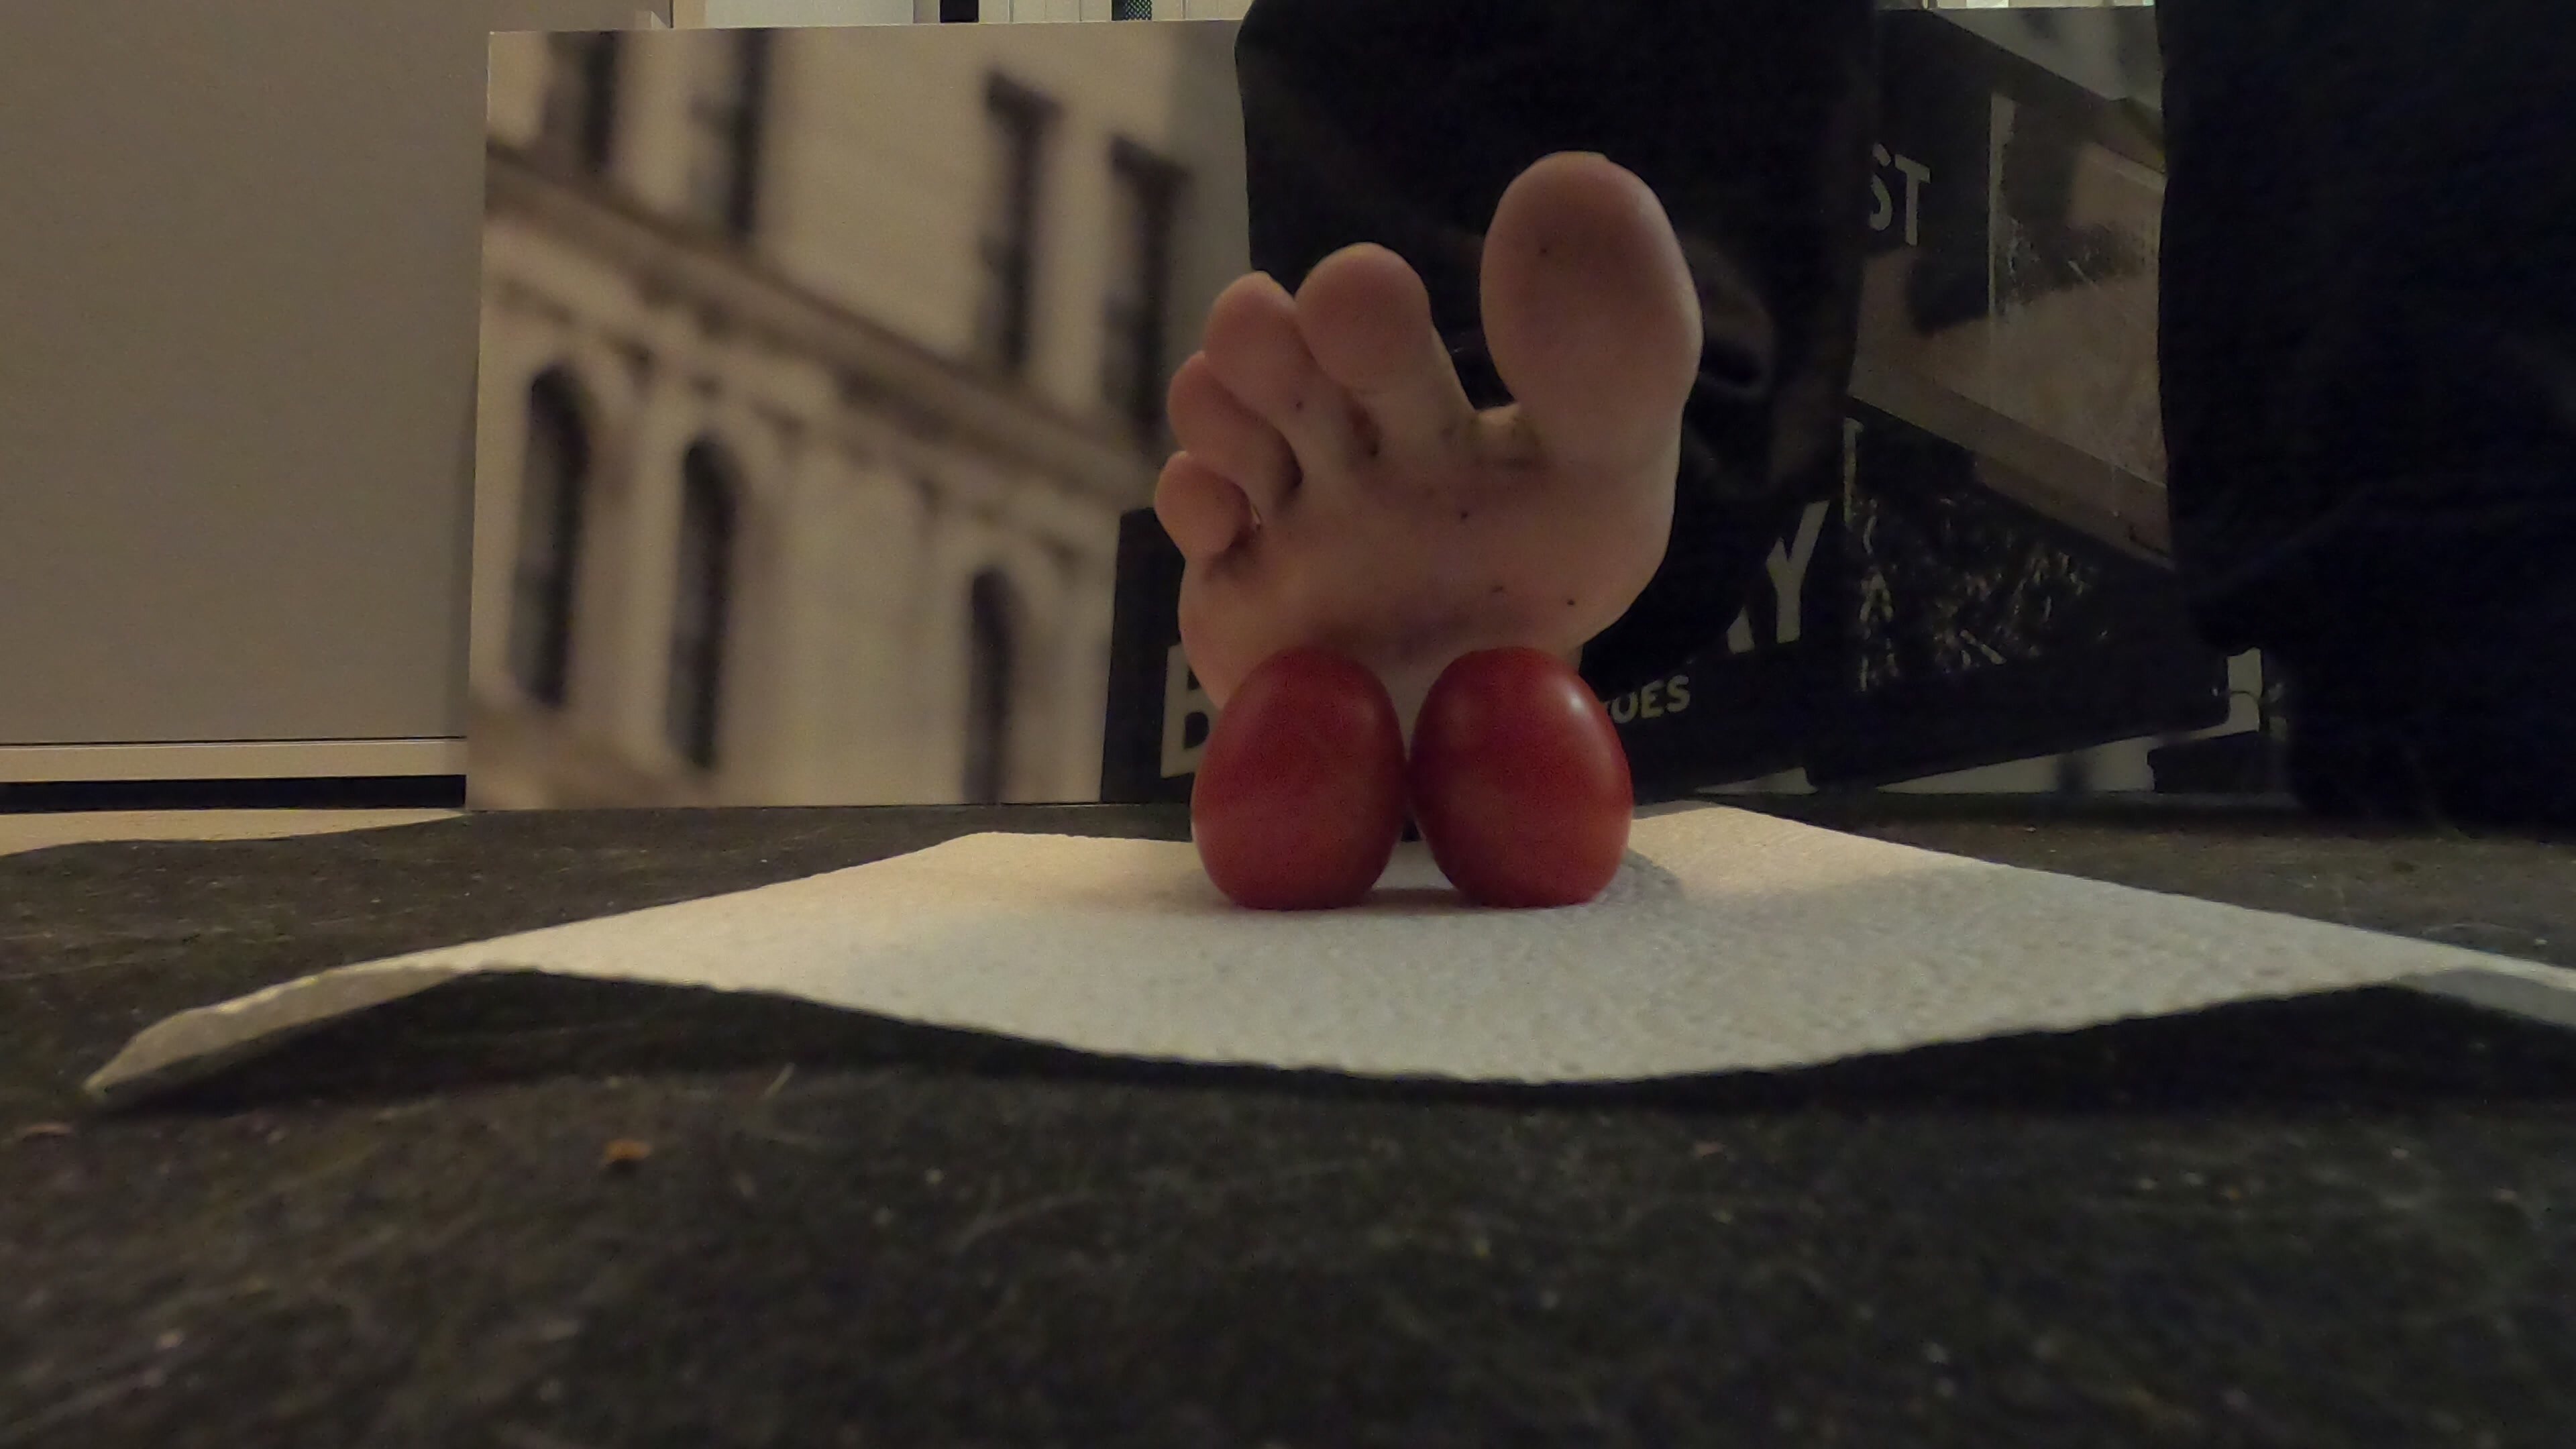 Tomato crush barefoot